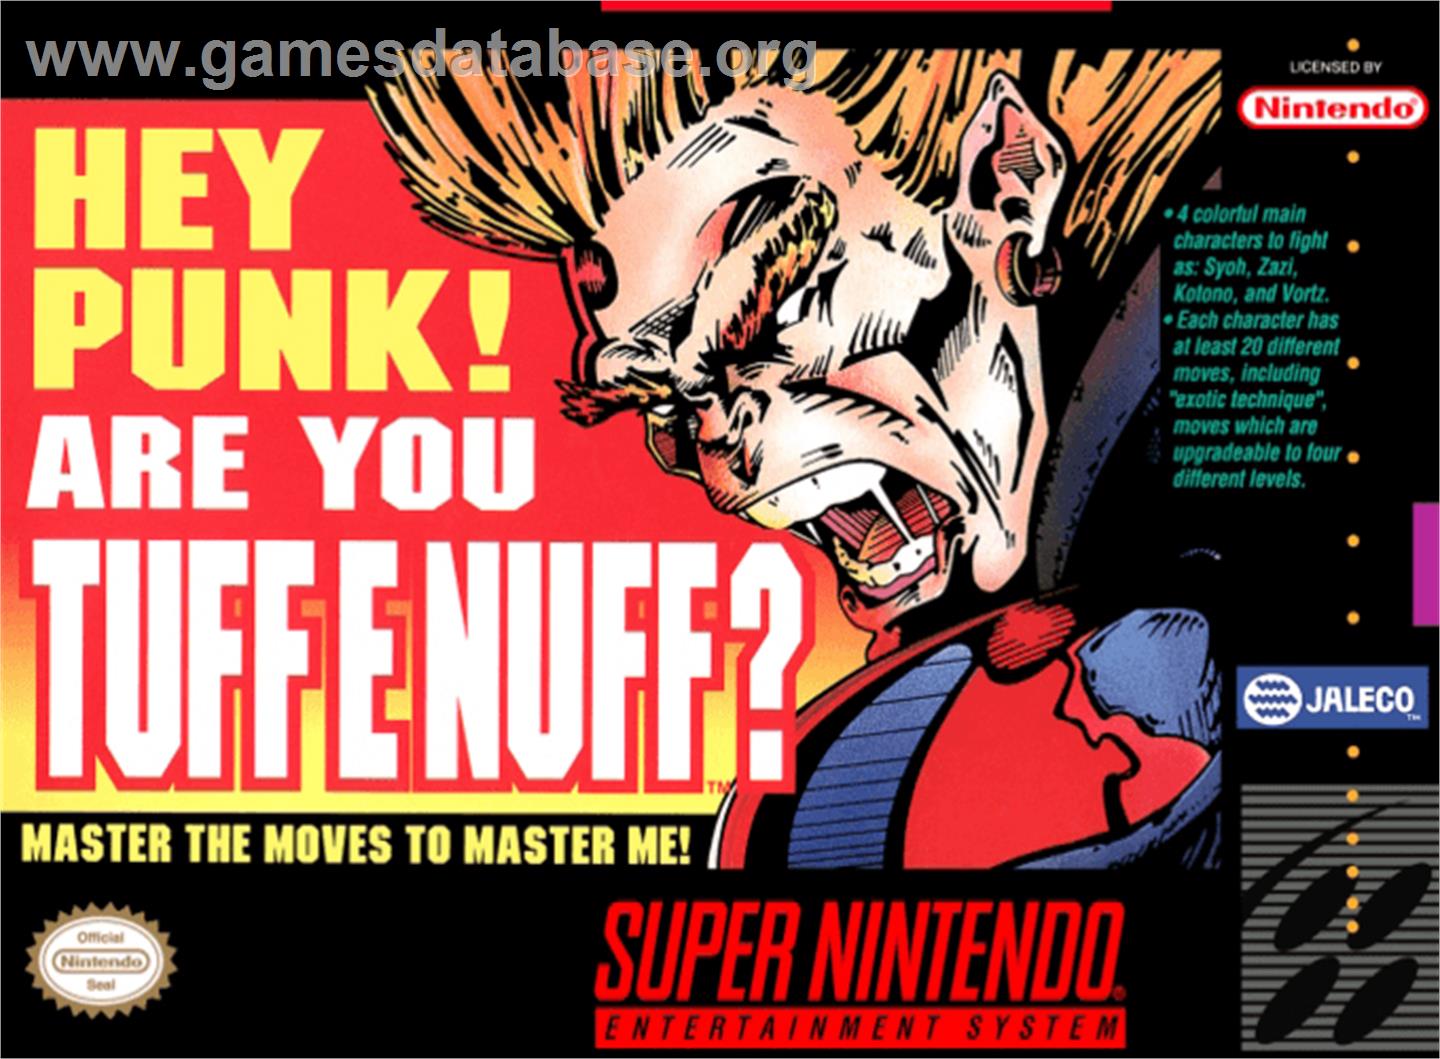 Tuff E Nuff - Nintendo SNES - Artwork - Box